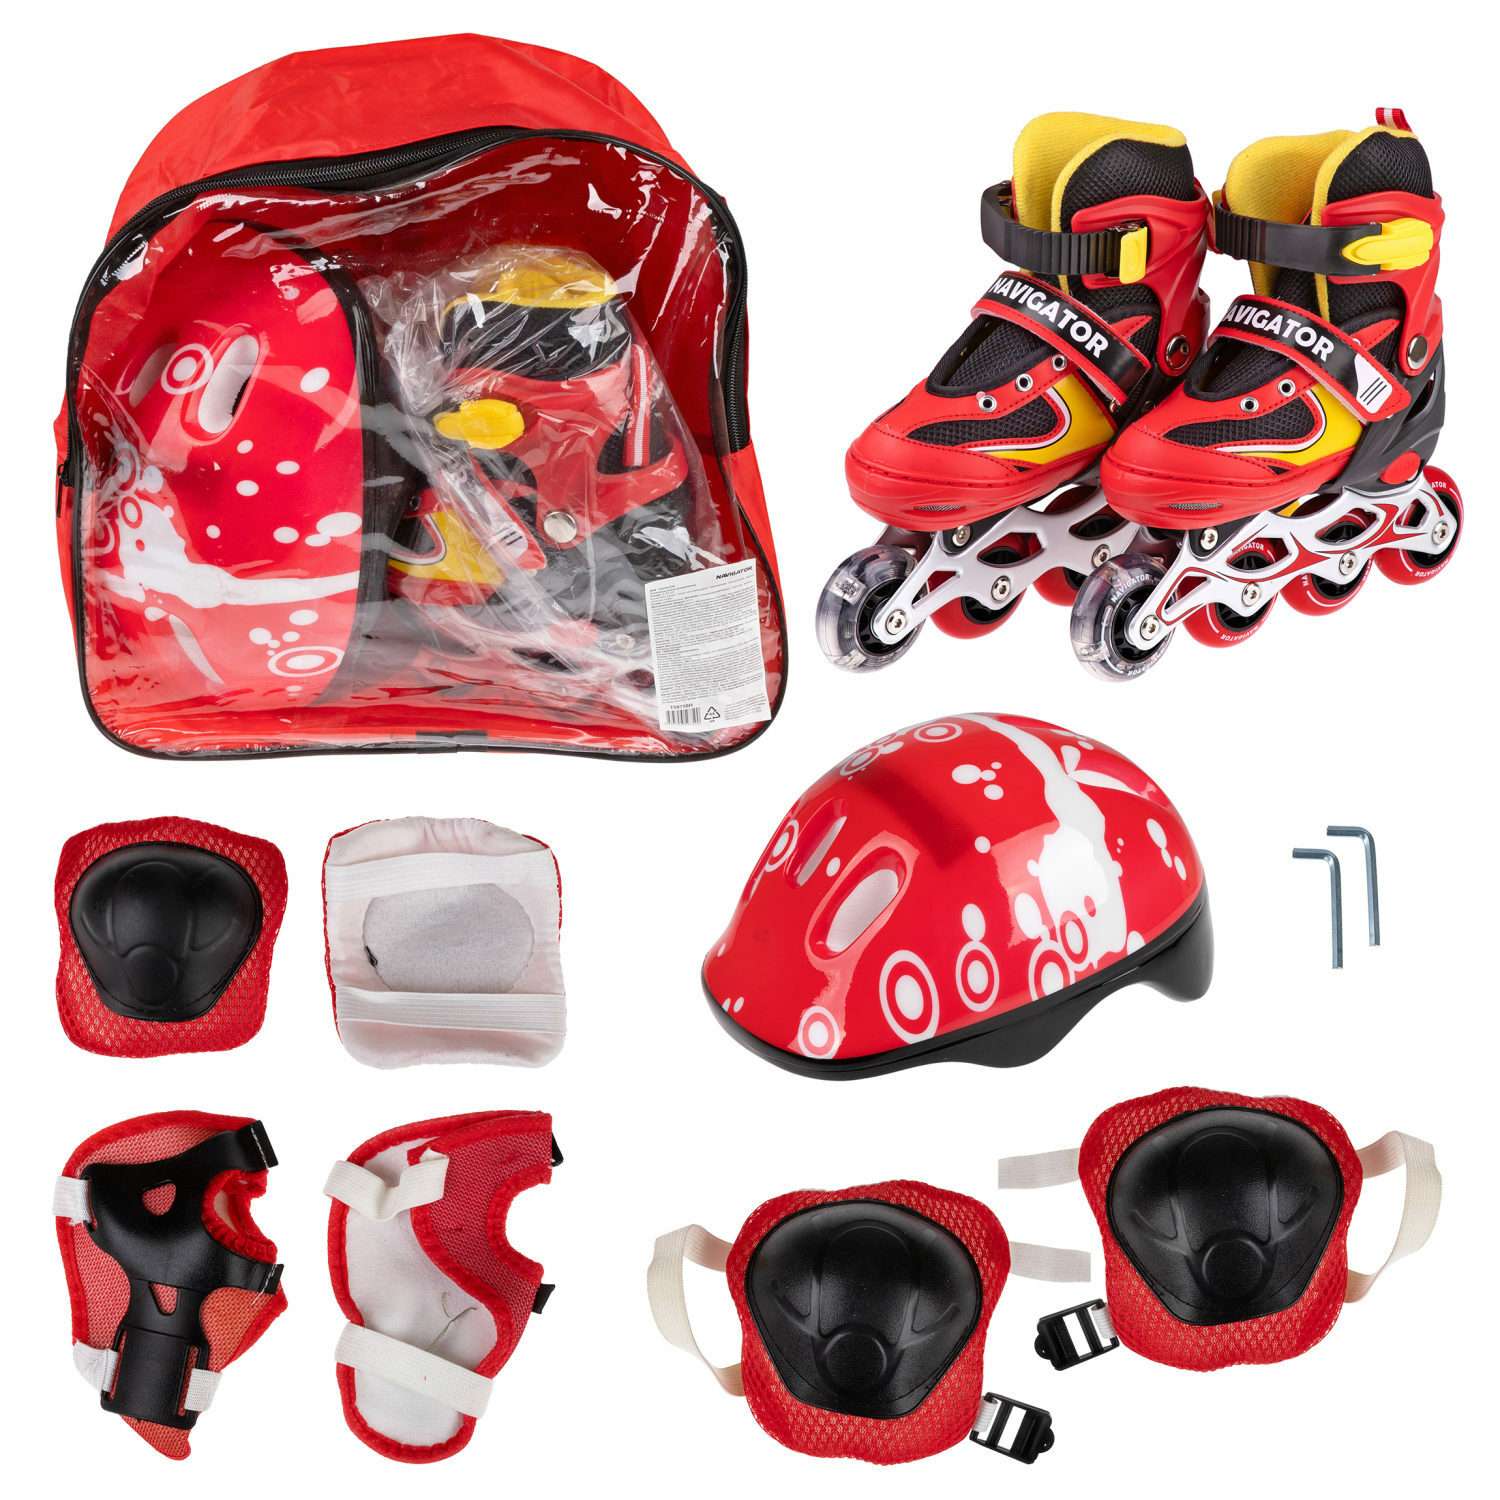 Ролики Navigator детские раздвижные 30 - 33 размер с защитой и шлемом красный - фото 2